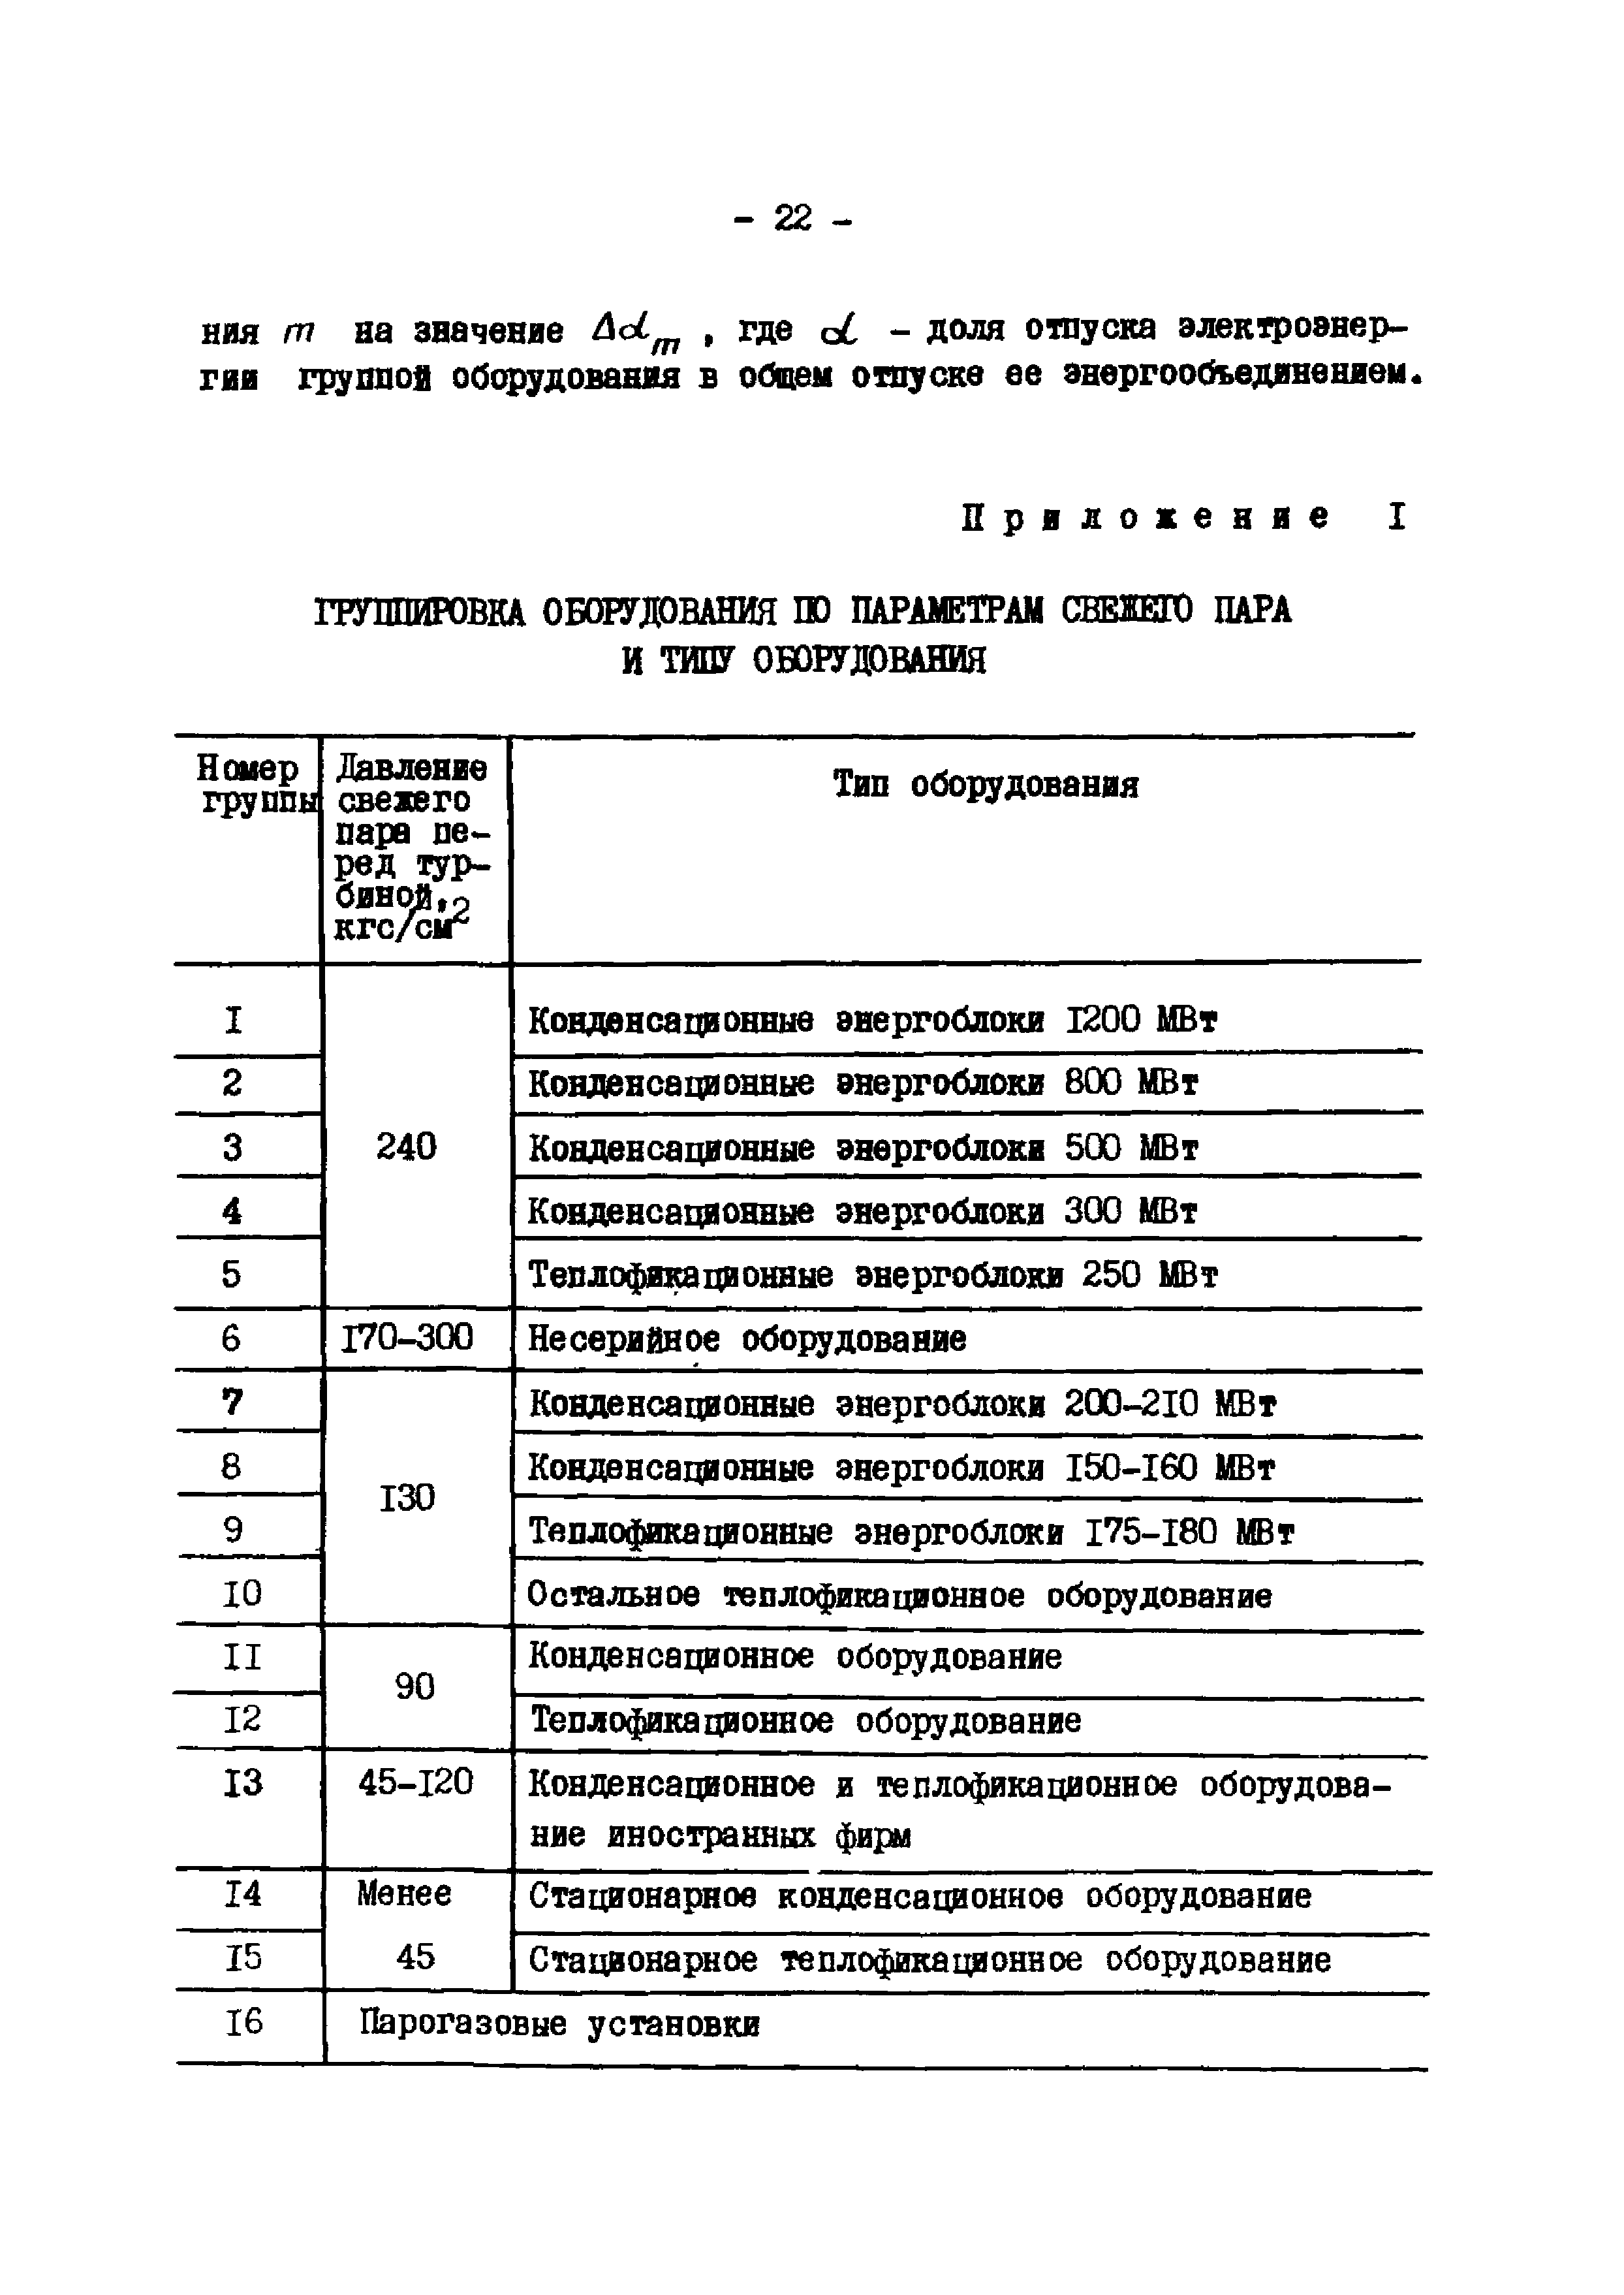 Эксплуатационный циркуляр Т-3/80